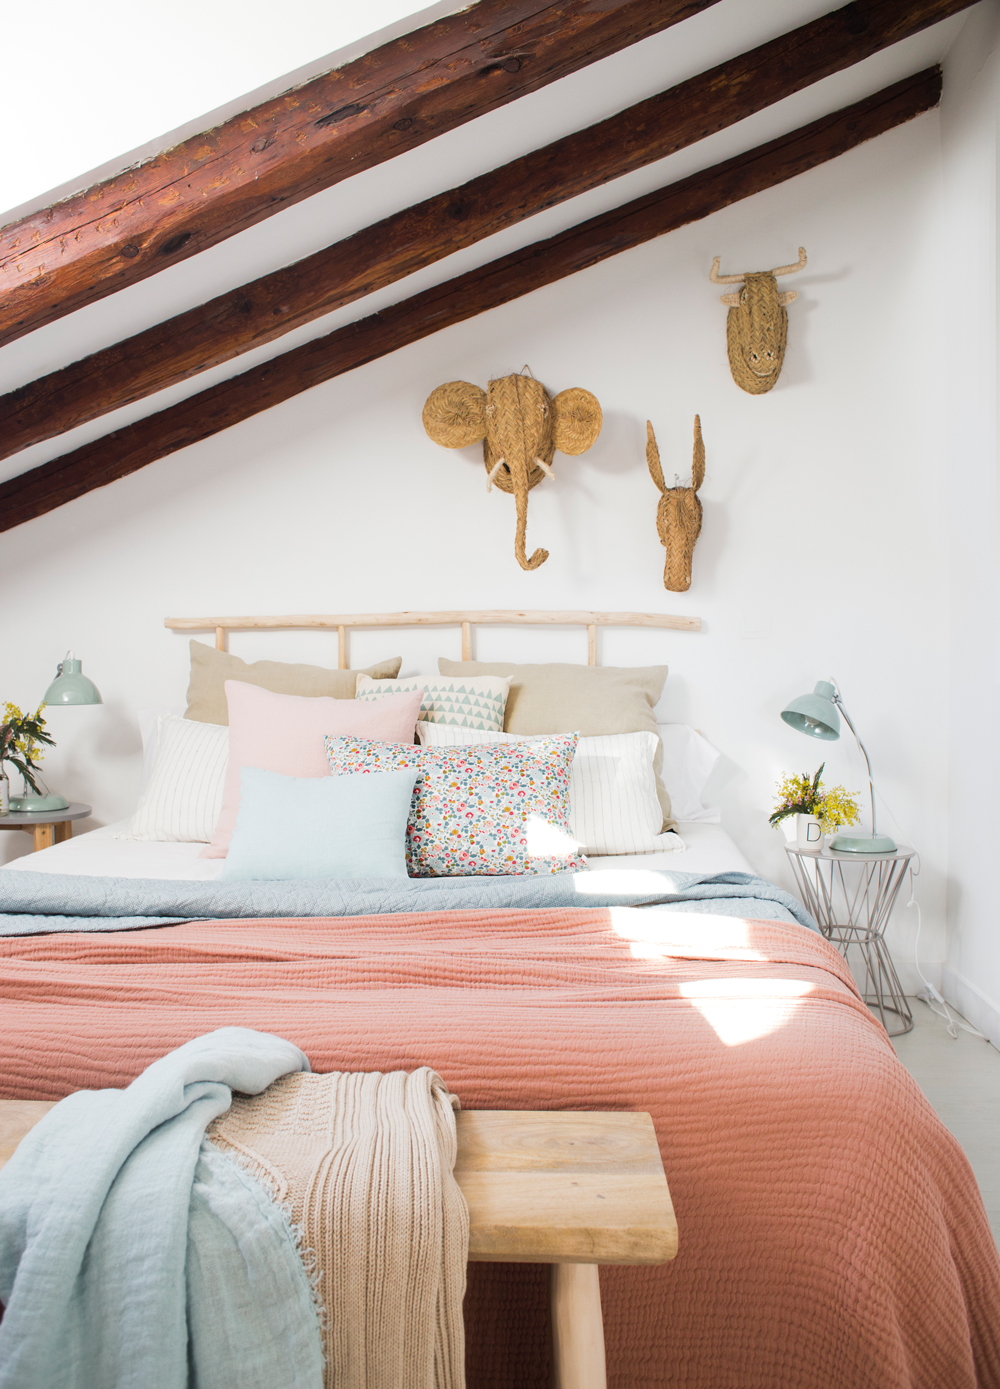 00455283. Dormitorio abuhardillado con ropa de cama rosa, blanco y azul, y cabezas de esparto 00455283